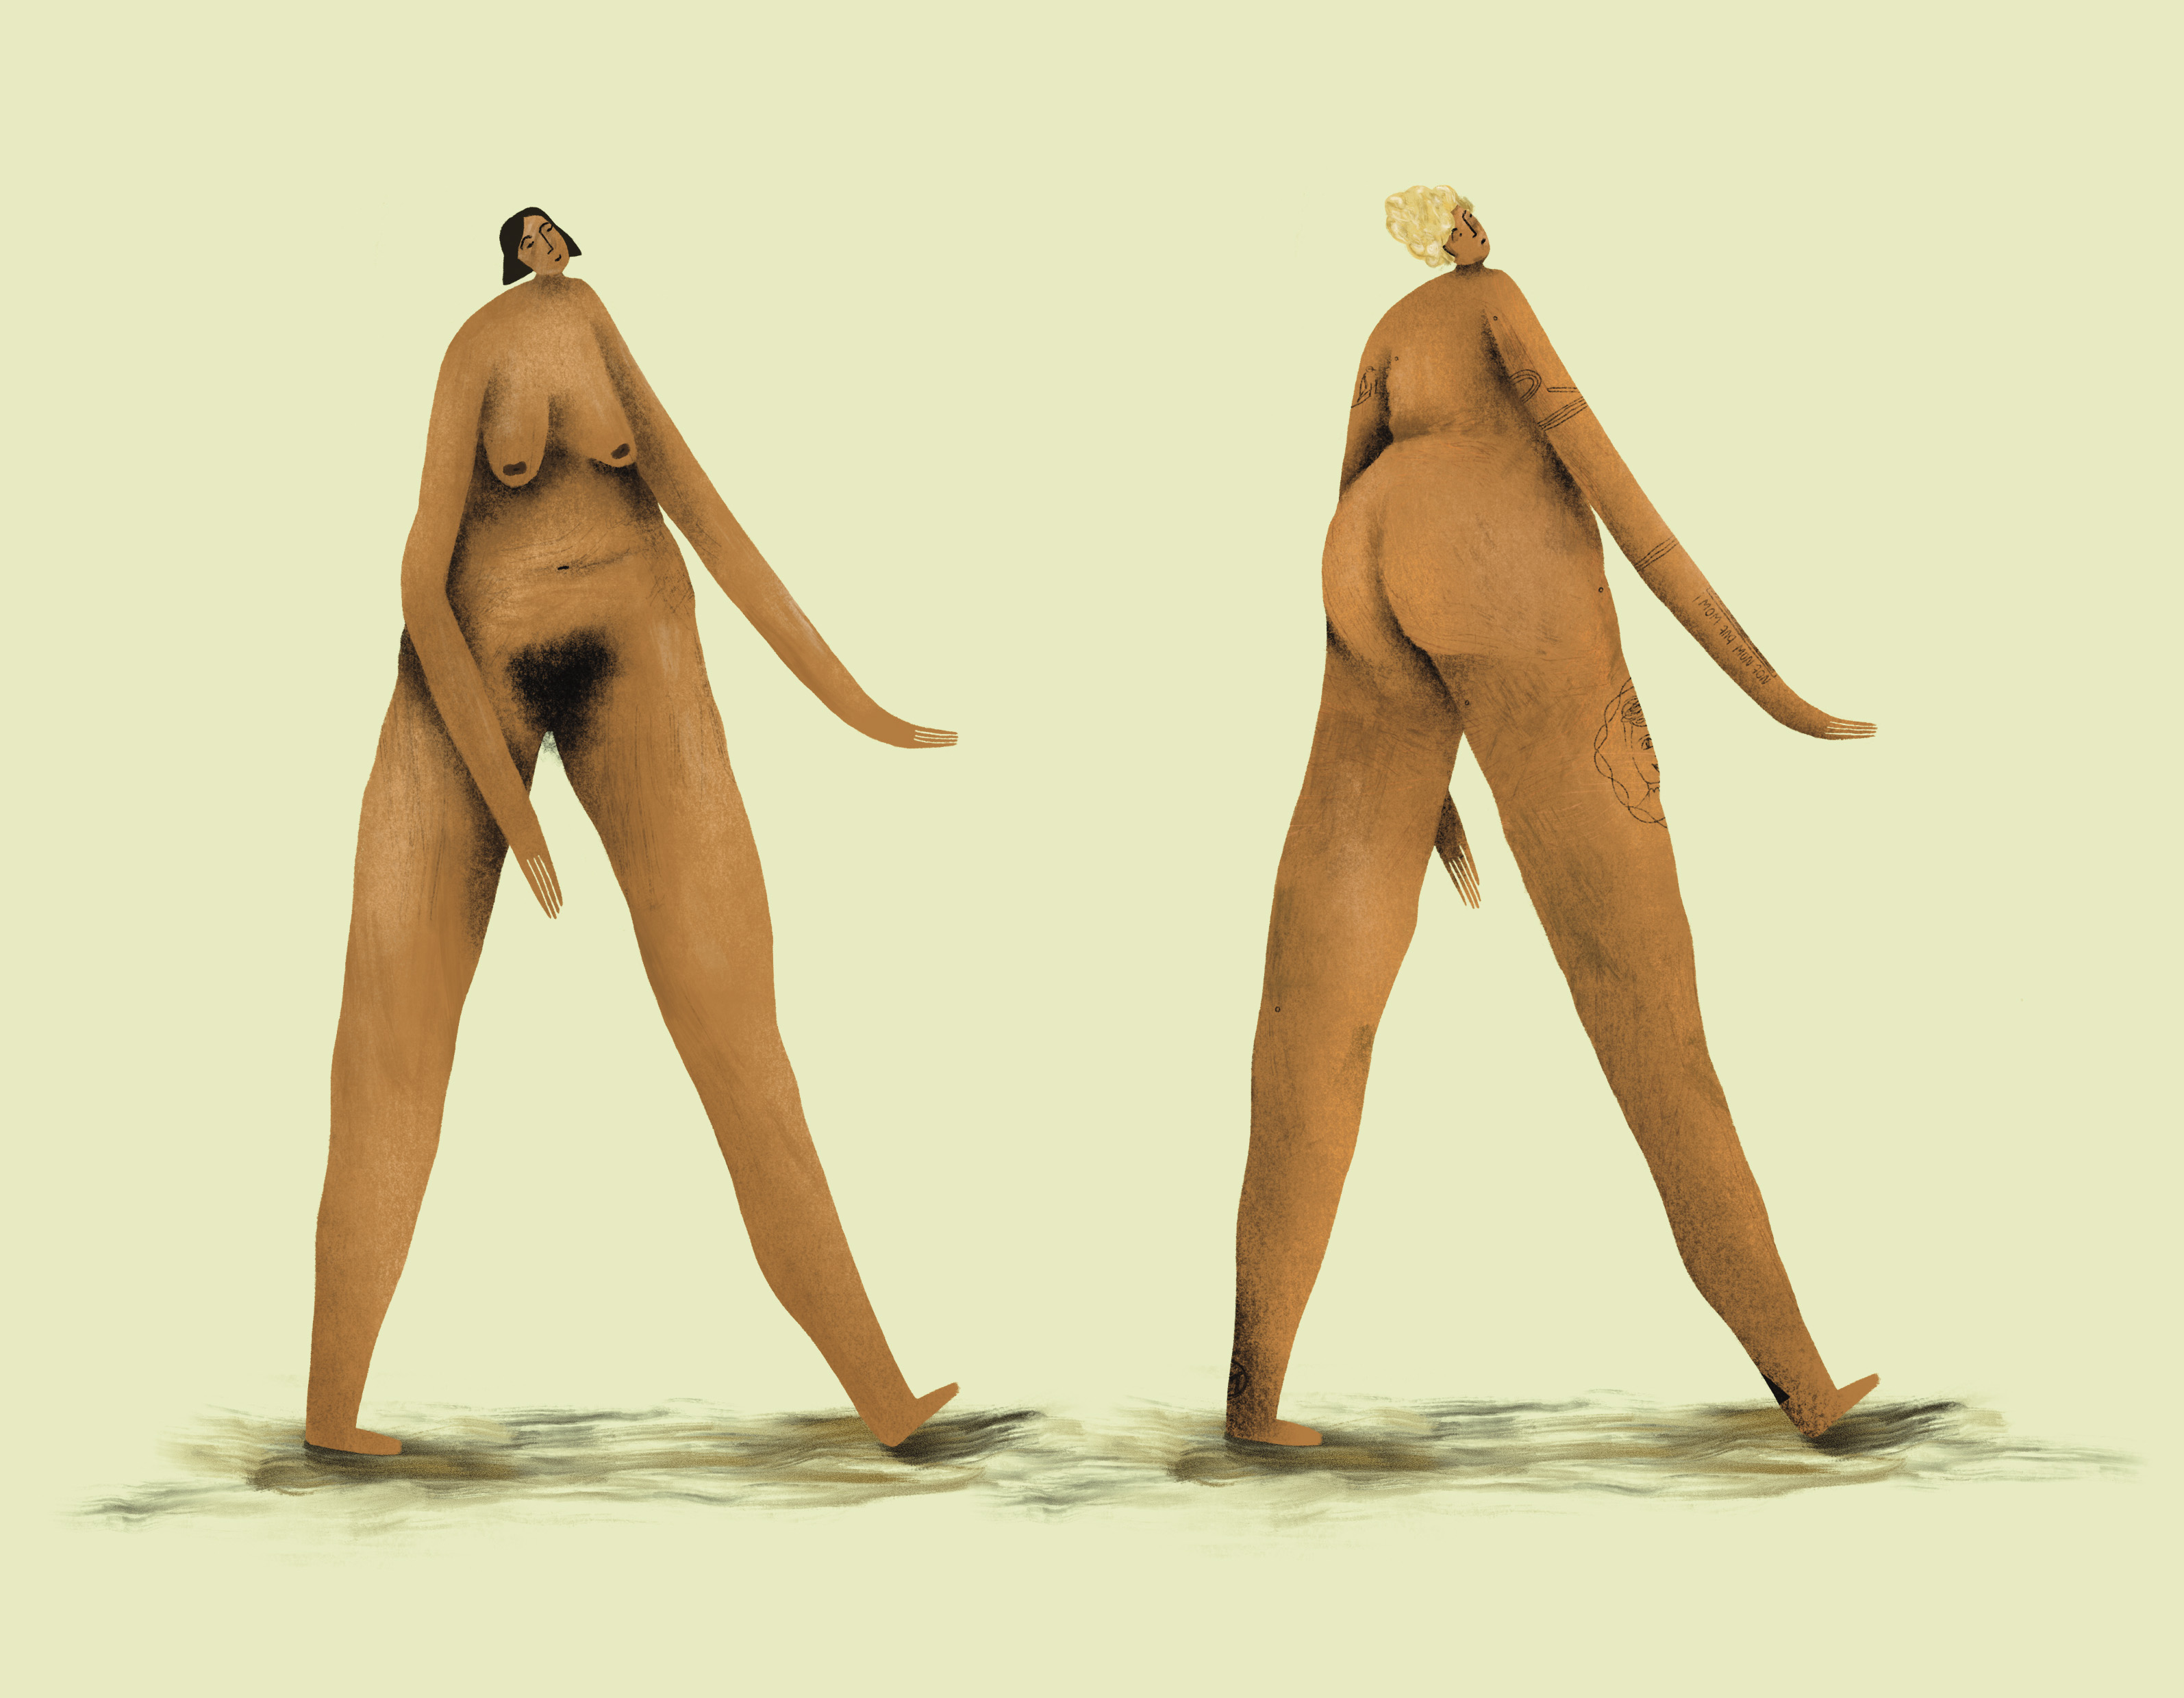 415-loretta-ipsum-illustration-nude-empowerment-emanzipation-feminismus-bodypositivi.jpg